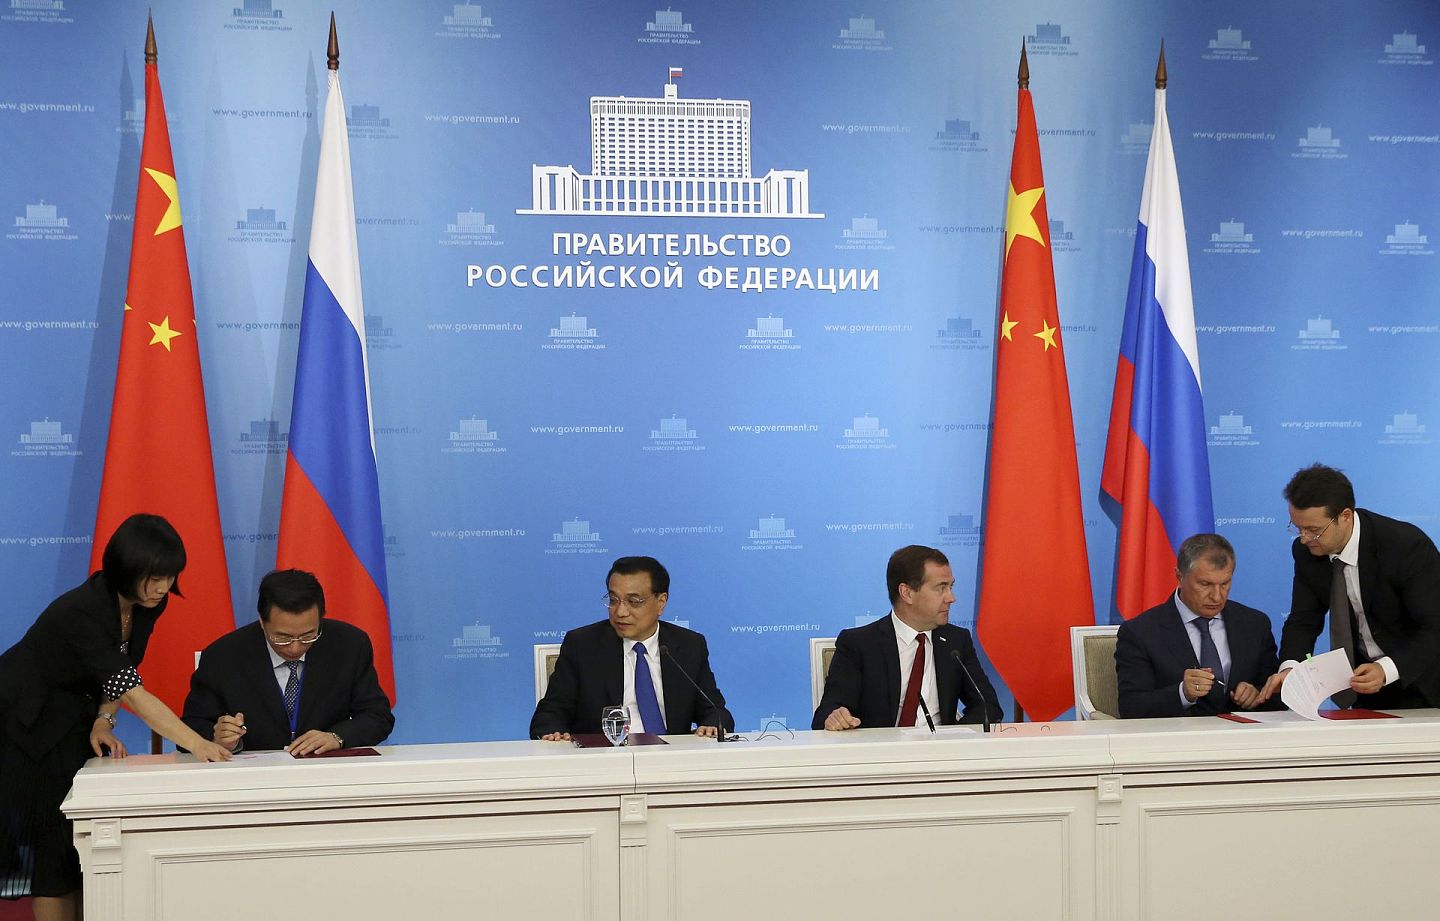 2014年10月13日，中国国务院总理李克强与俄罗斯总理梅德韦杰夫，中国石油天然气集团公司副董事长汪东进（左一），俄罗斯国营石油公司(Rosneft)集团主席伊戈尔谢钦(Igor Sechin，右一)出席签约仪式。俄罗斯国家石油公司(Rosneft)同意与中石油进行深化战略合作,包括液化天然气(LNG)项目等。（来源：路透社/俄新社）